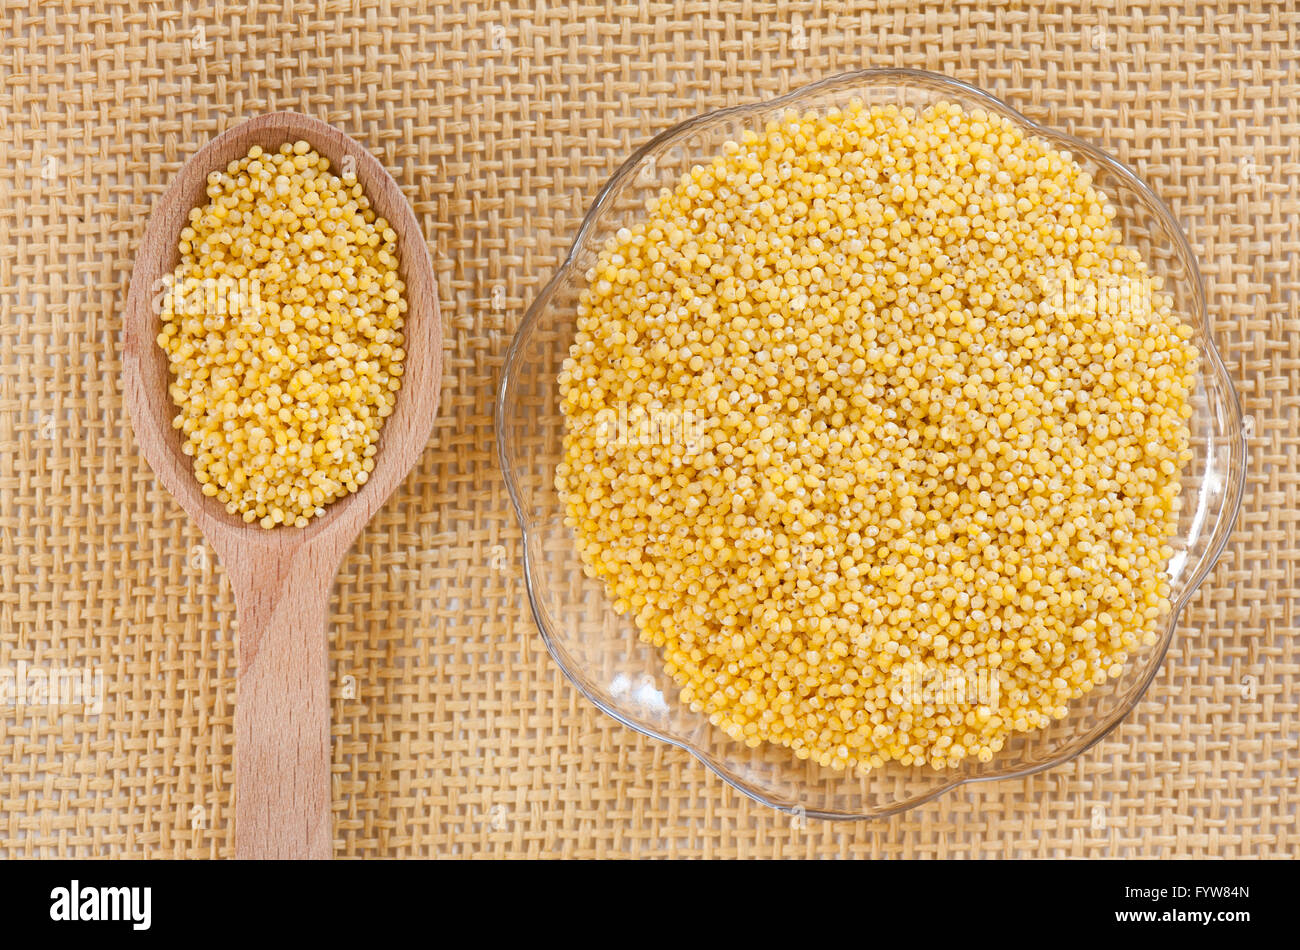 Gelbe Hirse geschältes Getreide auf Glas Untertasse und Holzlöffel auf Matte, gesunde Grundnahrungsmittel Rohprodukt, Teil der Samen liegen. Stockfoto